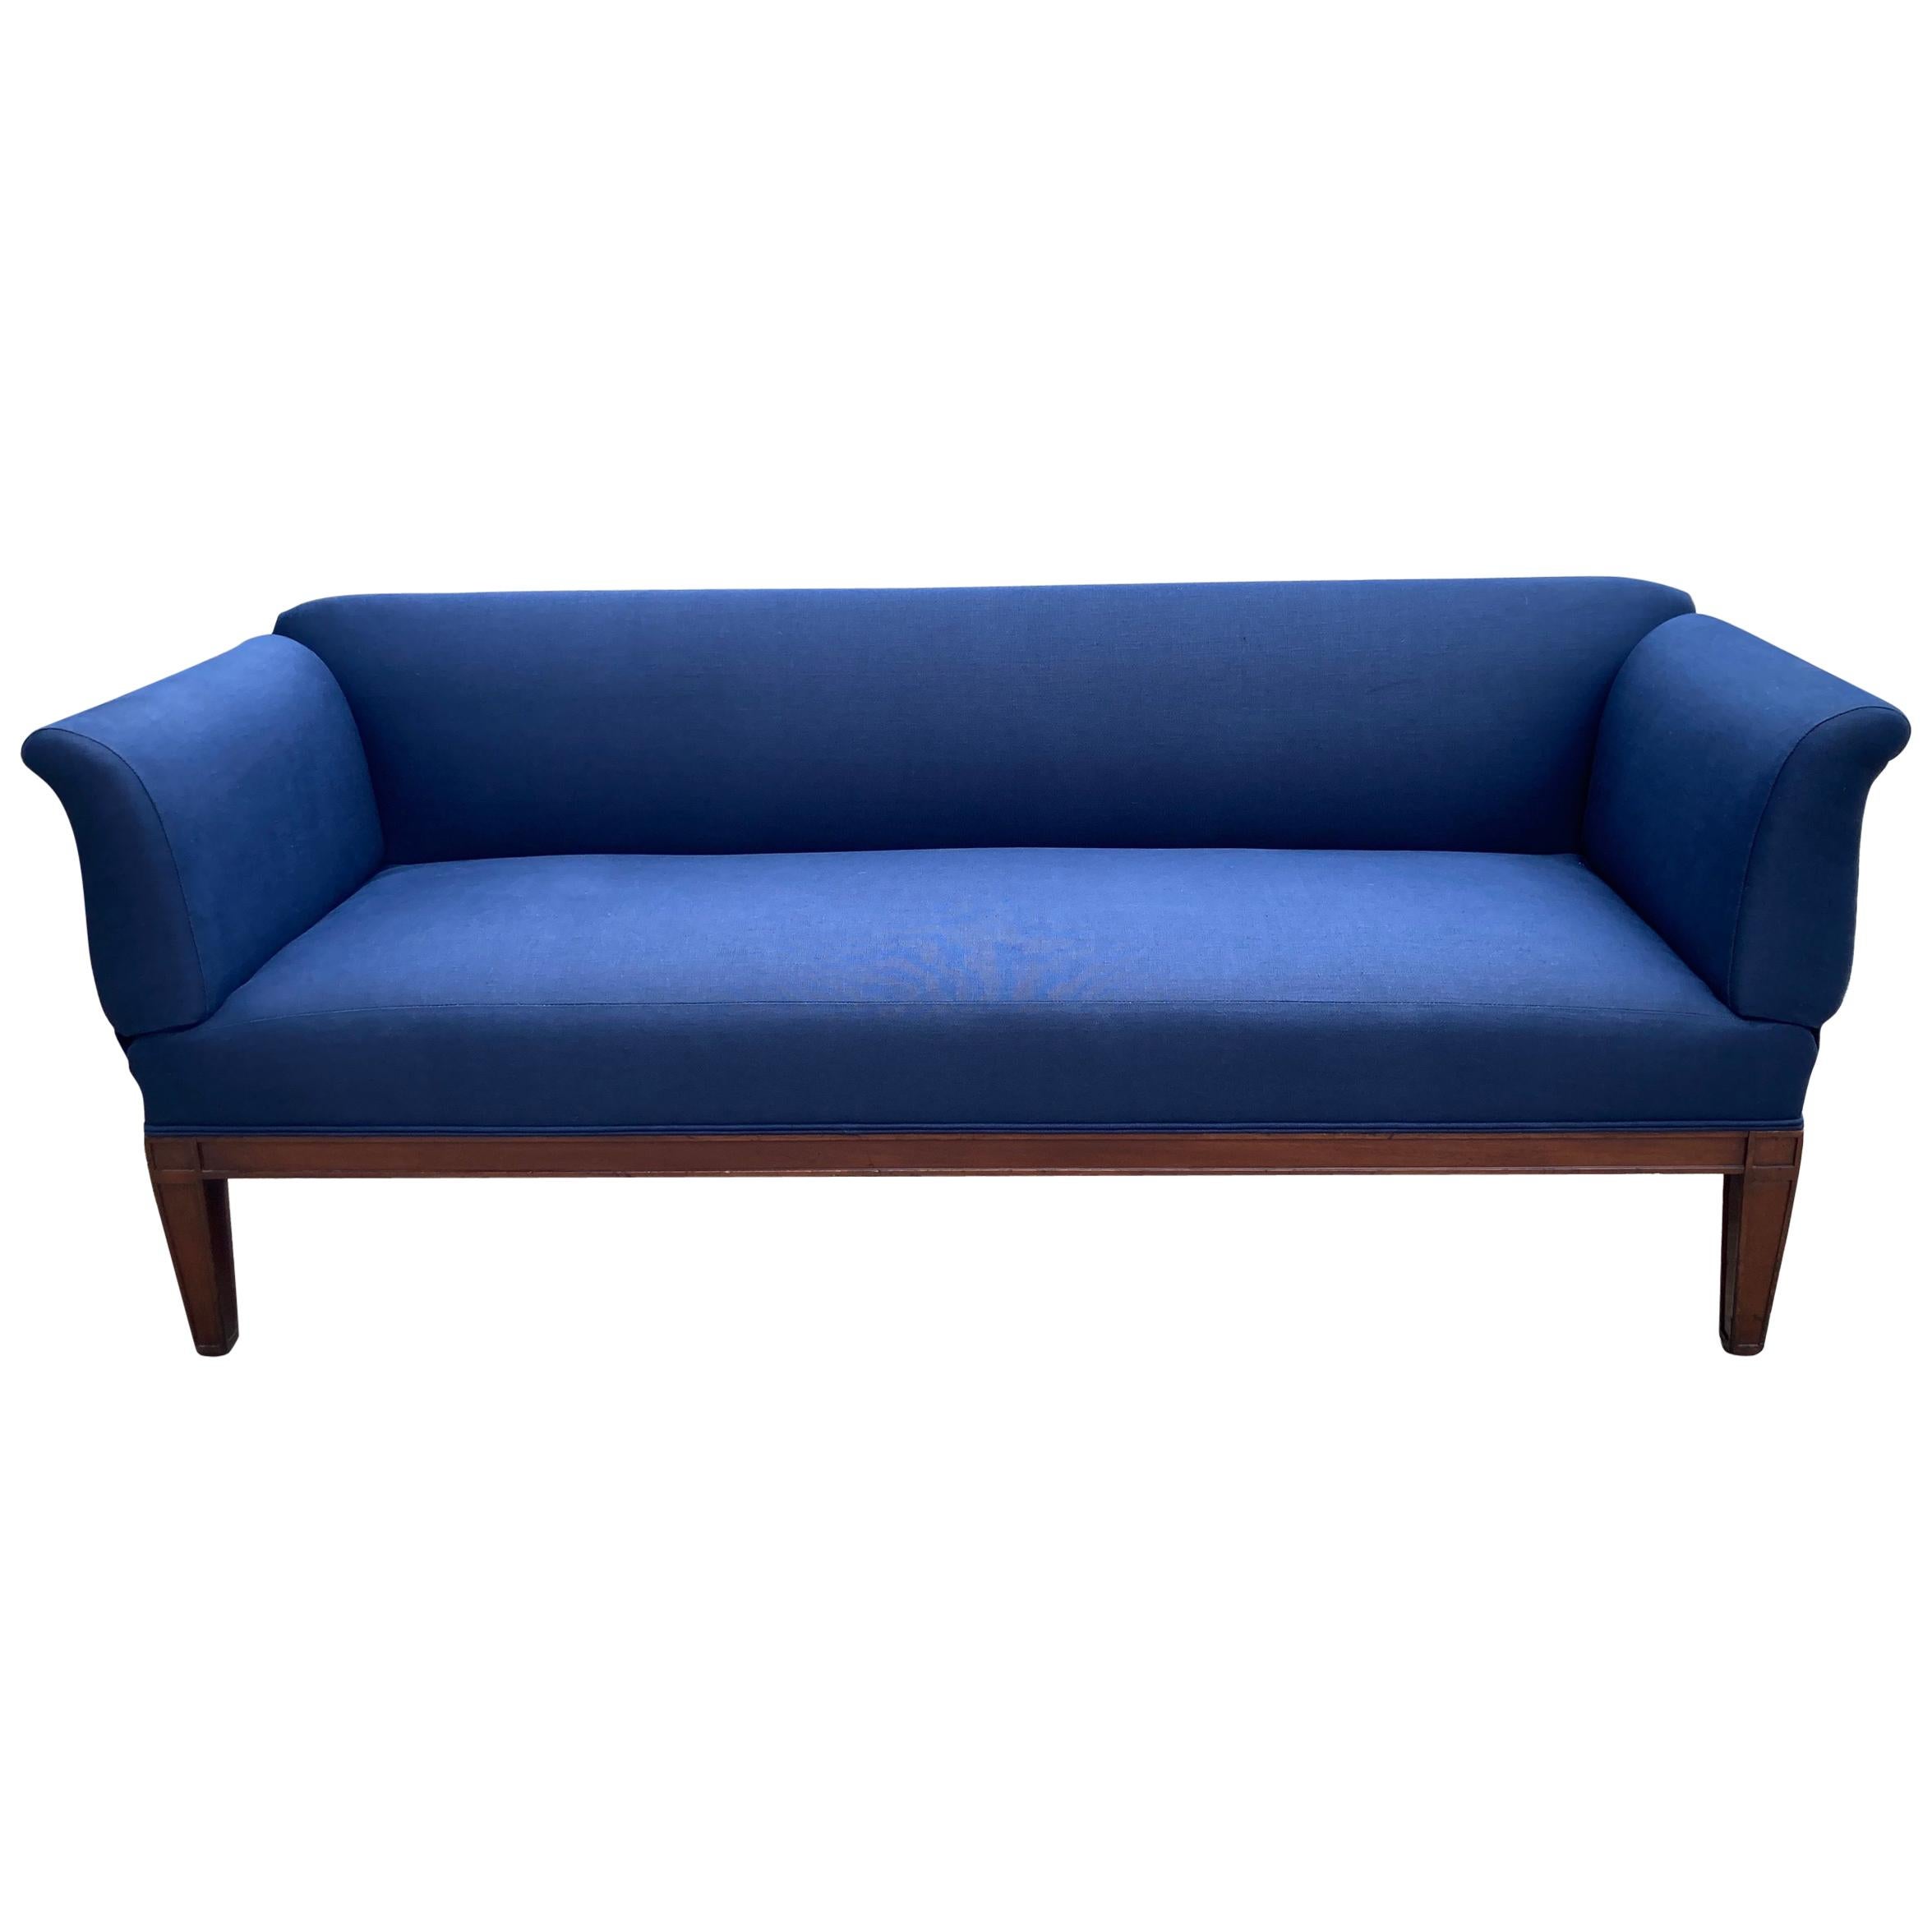 Directoire-Sofa oder Banquette im Directoire-Stil mit verstellbaren Armlehnen